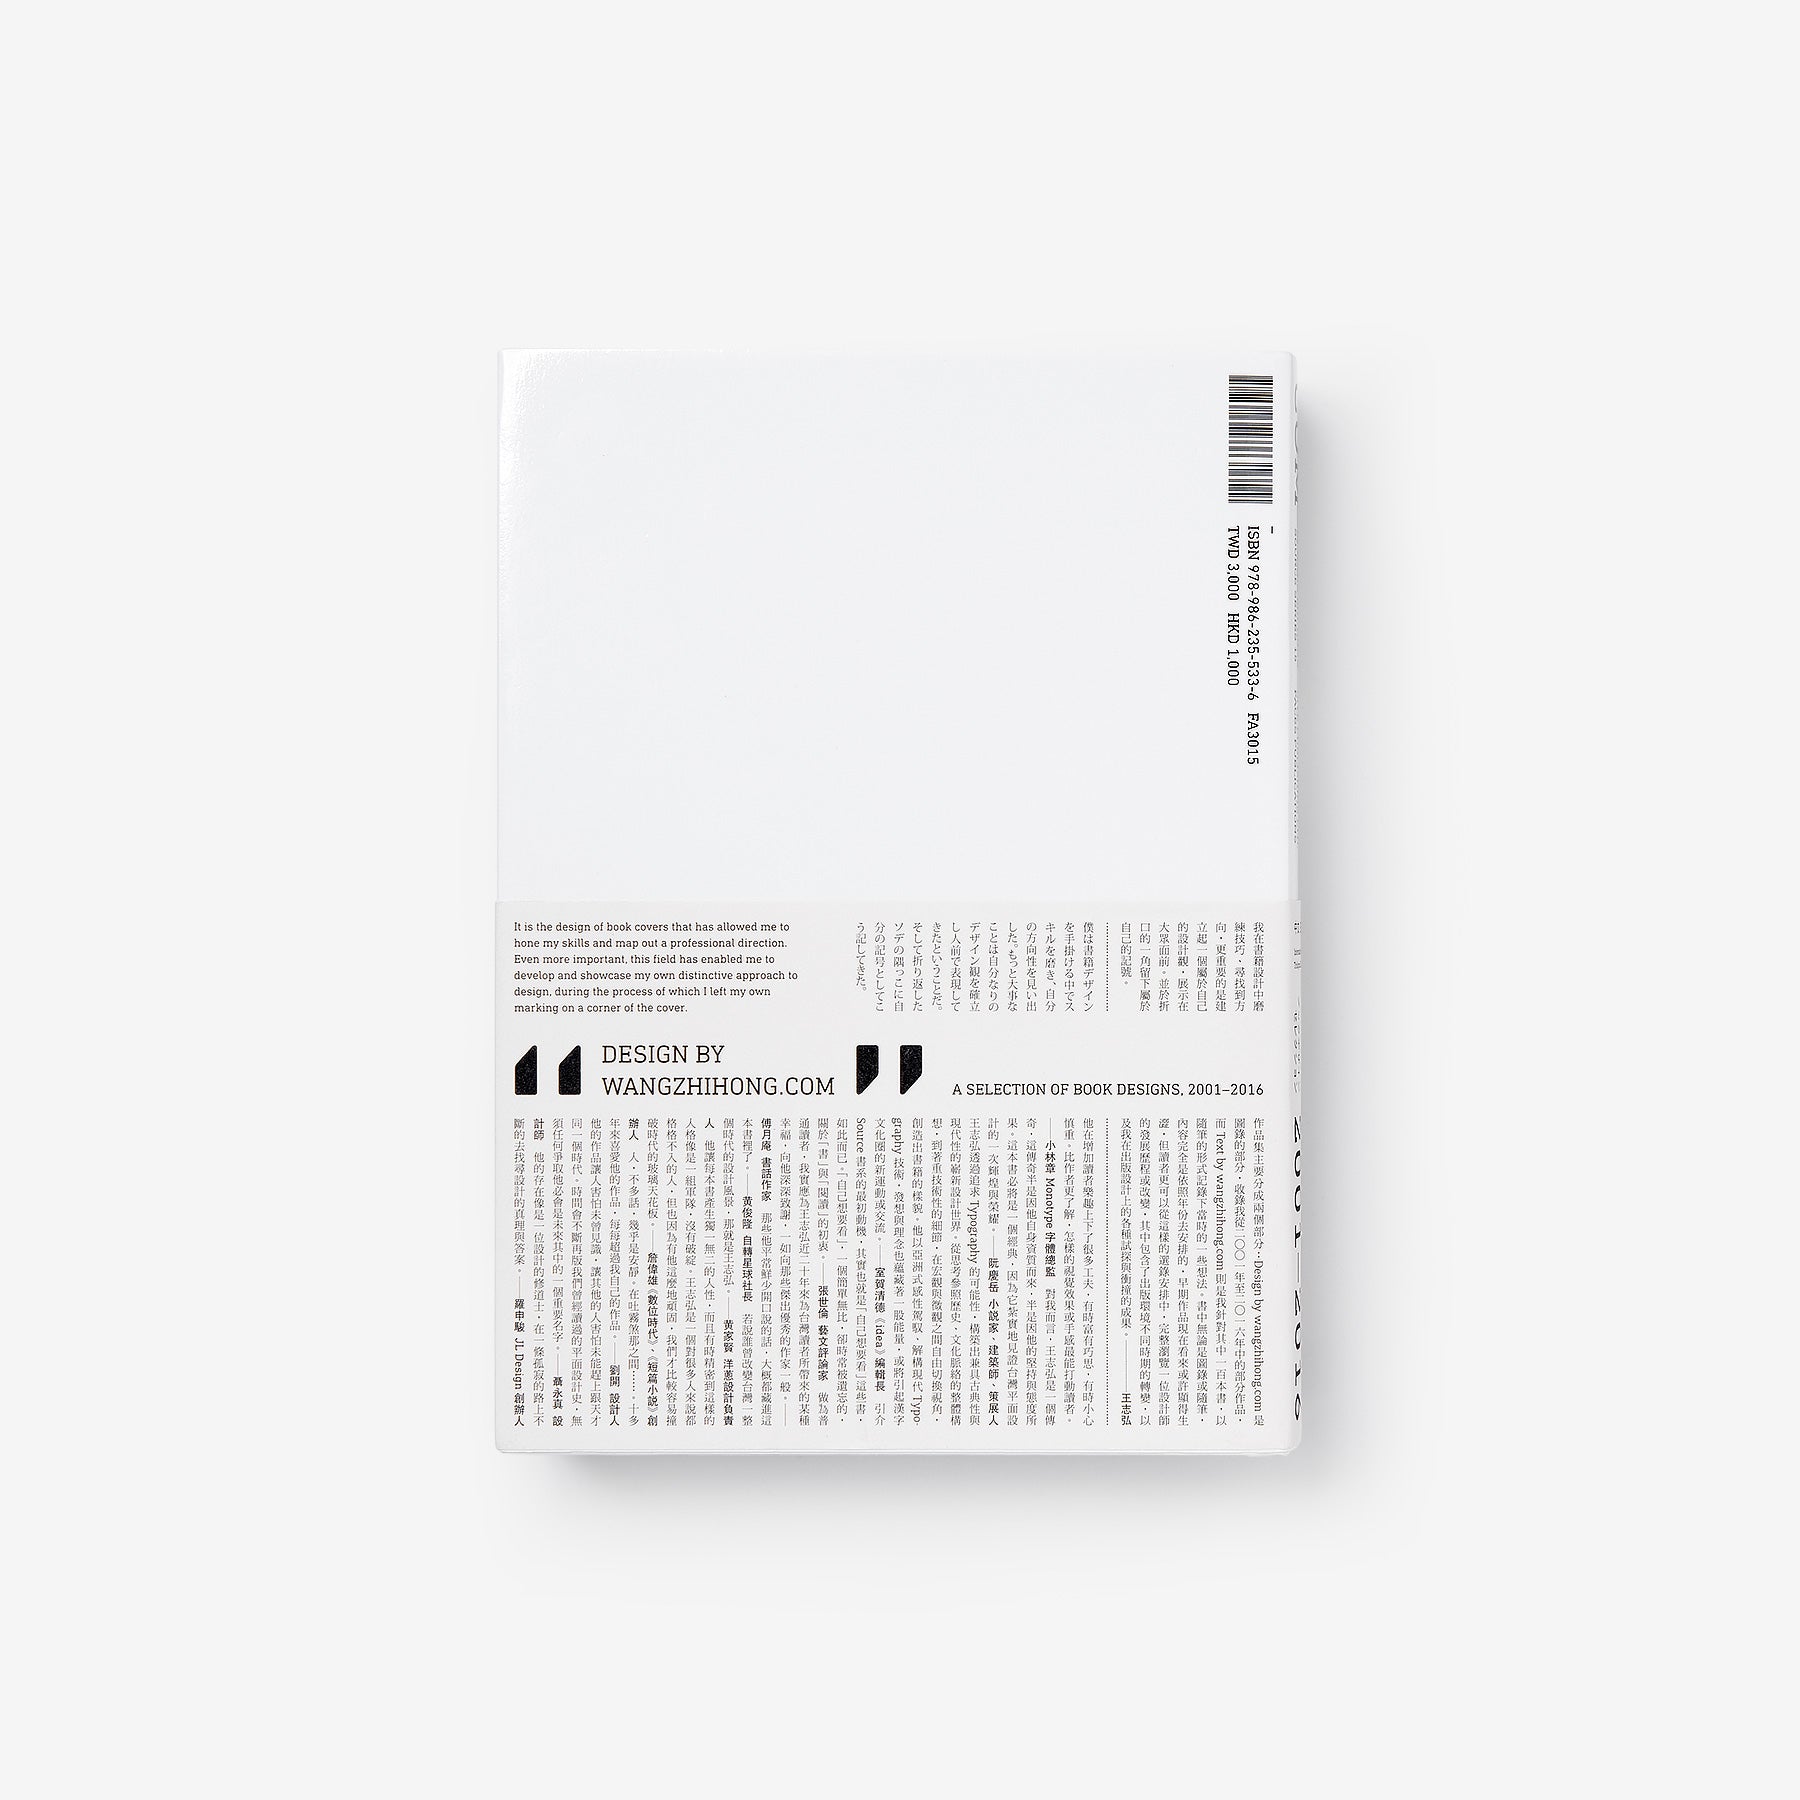 Design by wangzhihong.com: A Selection of Book Designs 2001-2016 (王志弘 / Wang Zhi-Hong)